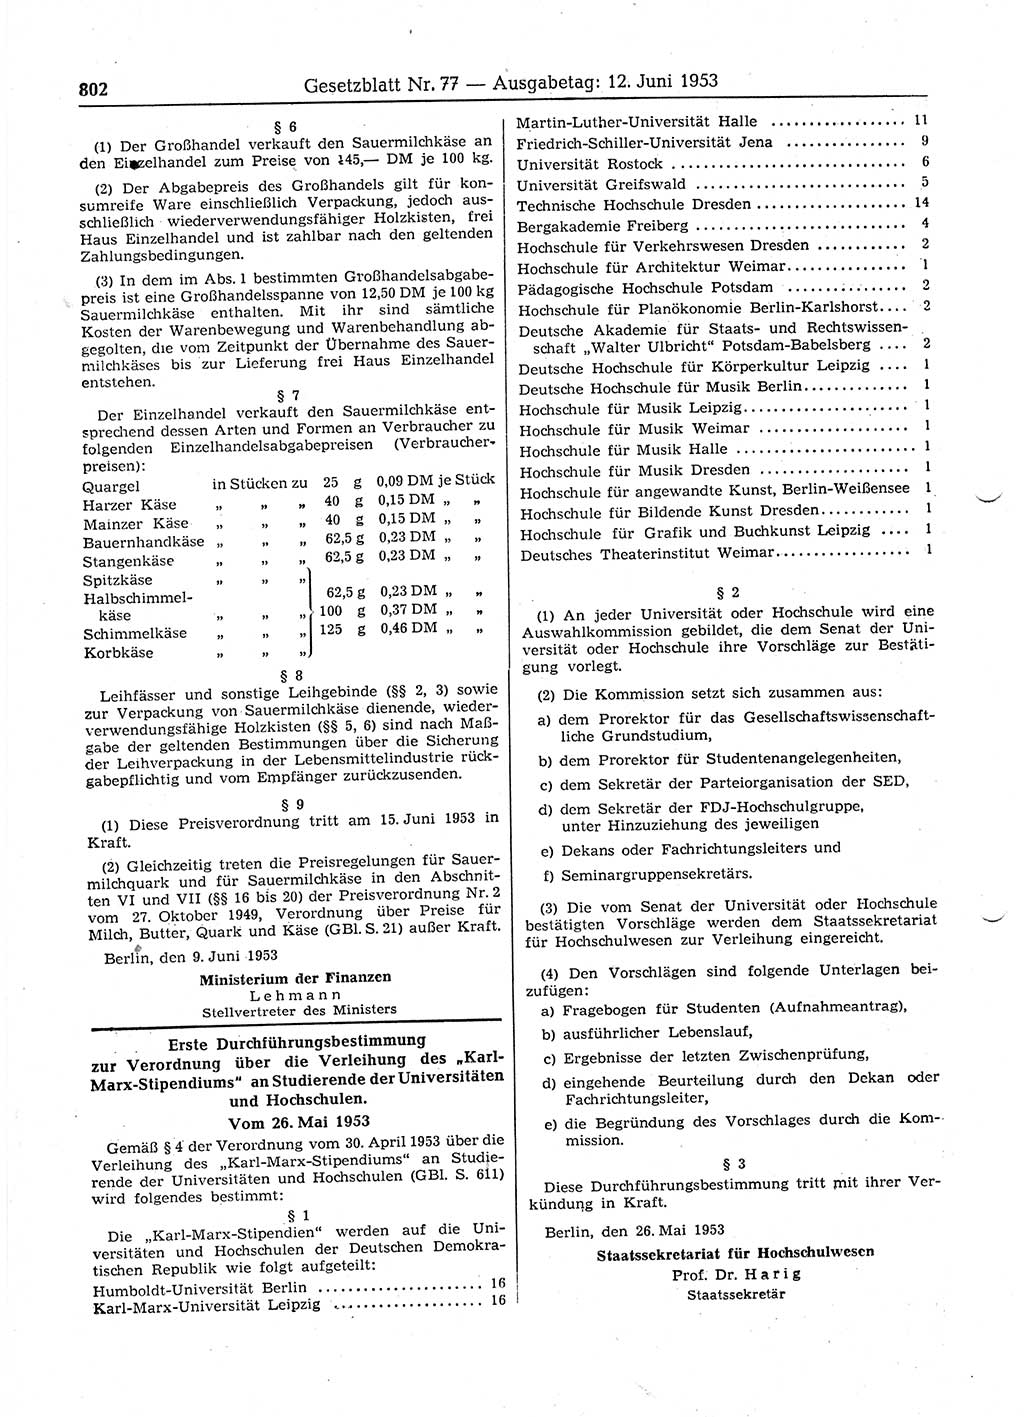 Gesetzblatt (GBl.) der Deutschen Demokratischen Republik (DDR) 1953, Seite 802 (GBl. DDR 1953, S. 802)